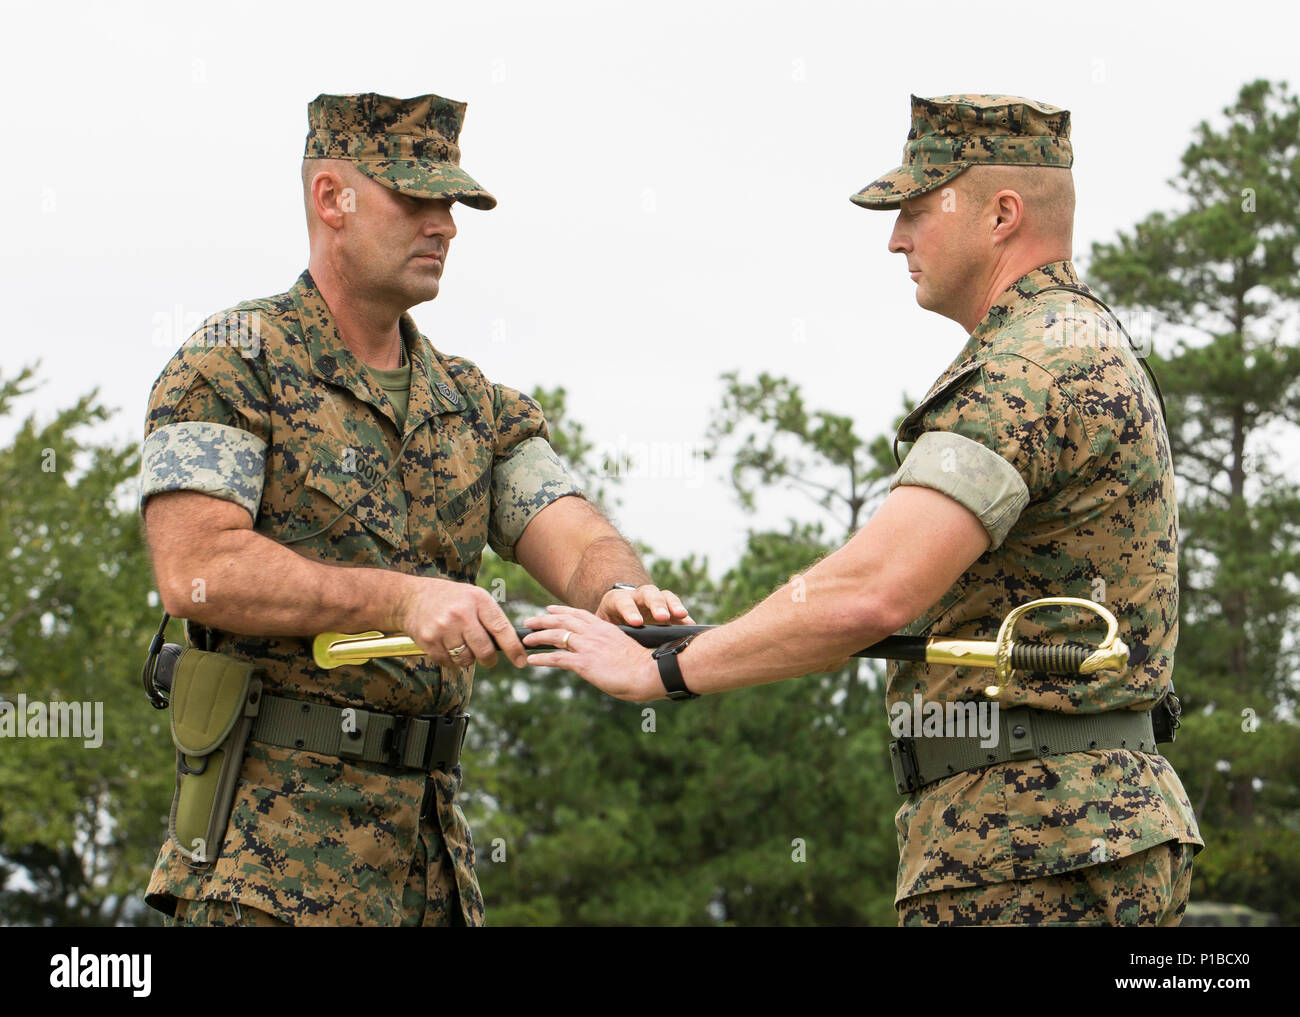 Us Marine Corps Sgt. Maj. Michael S. Woods, Links, überträgt das Schwert zu oberst Matthew S. Reid, kommandierender Offizier, 6 Marine Regiment, 2nd Marine Division, während eine Erleichterung und Termin Zeremonie am Camp Lejeune, N.C., Oktober 6, 2016. Sgt. Maj. Michael S. Woods Befehl an Sgt aufgegeben. Maj. Darrell L. Carver während der Zeremonie. (U.S. Marine Corps Foto: Staff Sgt. Keonaona C. Paulo 2d MARDIV Bekämpfung der Kamera) Stockfoto